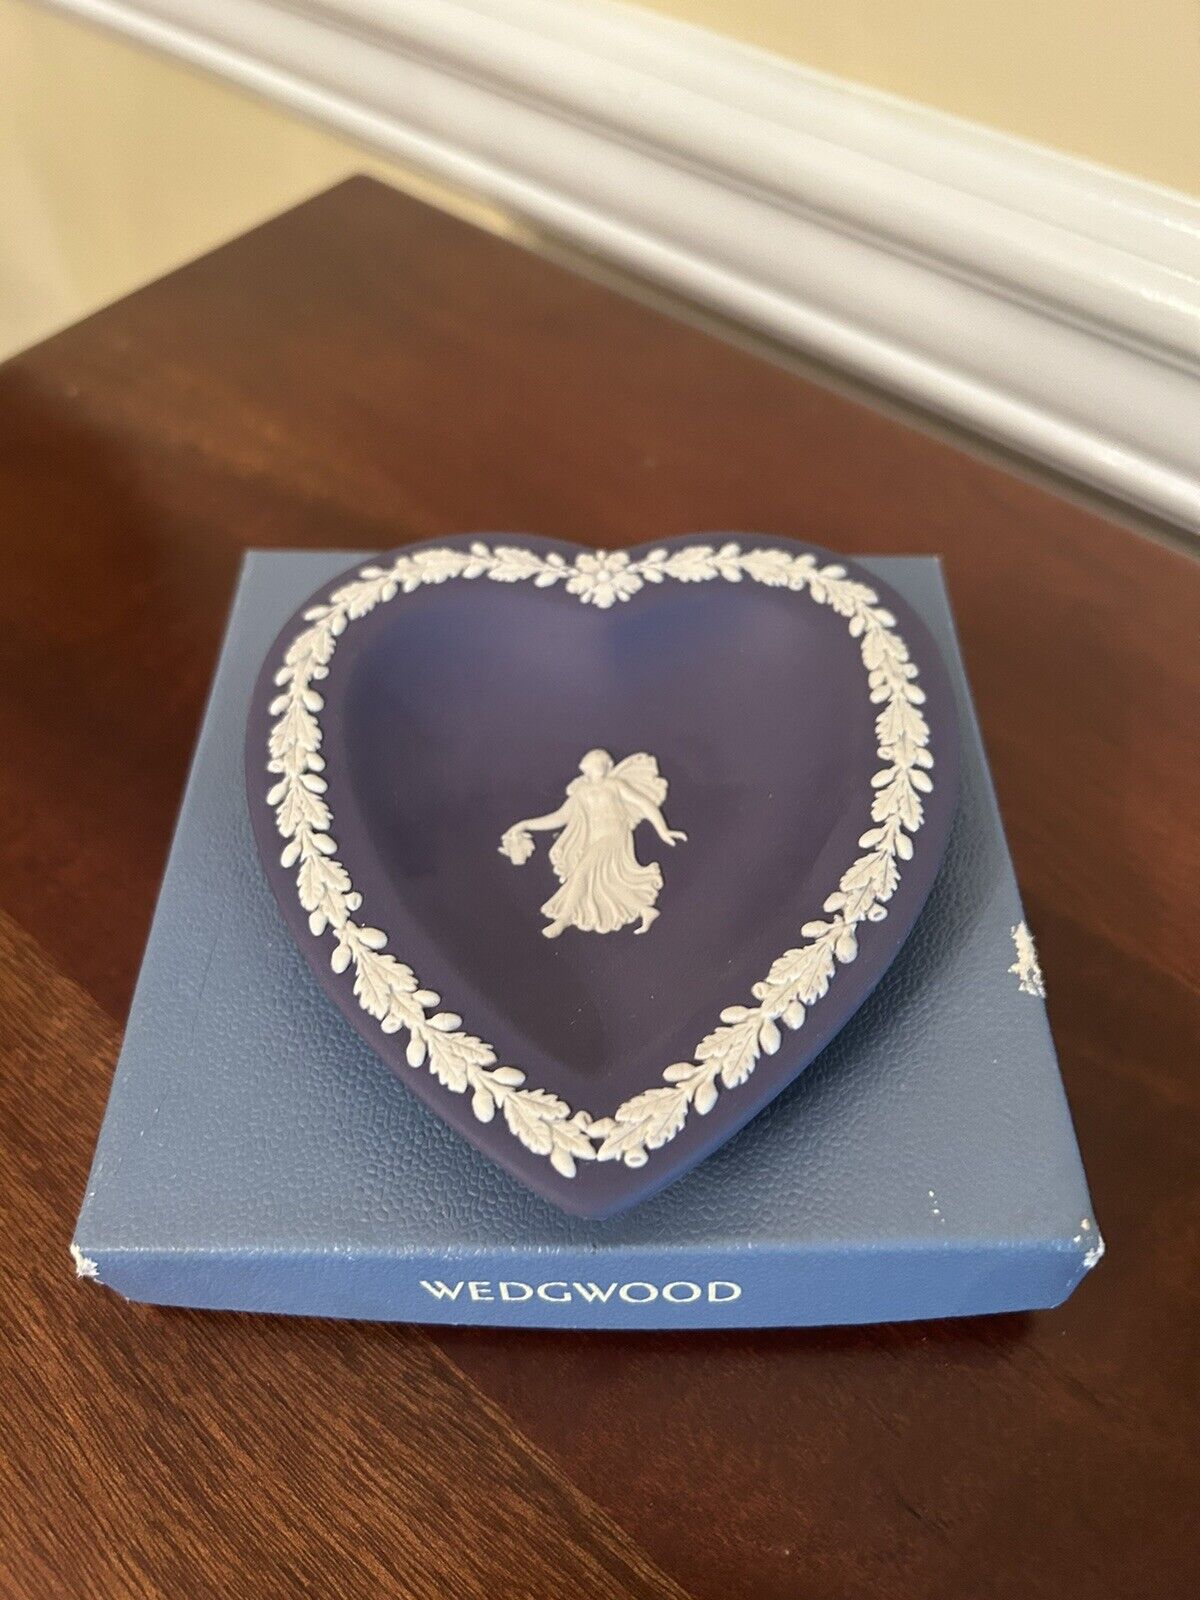 Wedgwood Jasperware  Dancing Hours  Heart Dish in Portland Blue and Cream w/ Box